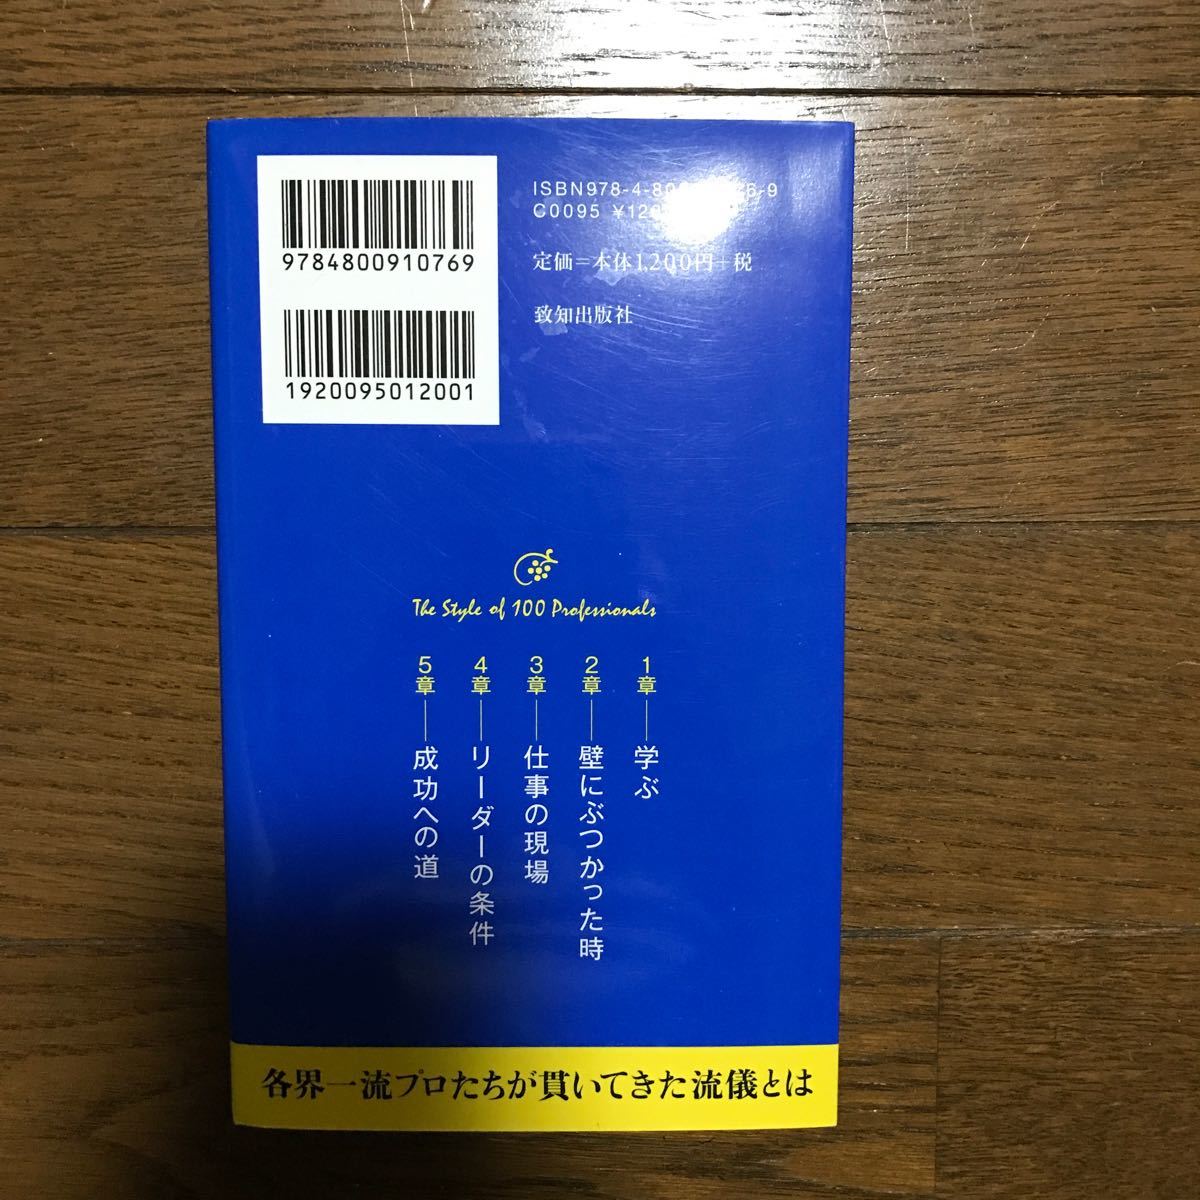 プロフェッショナル100人の流儀 珠玉の名言集/藤尾秀昭